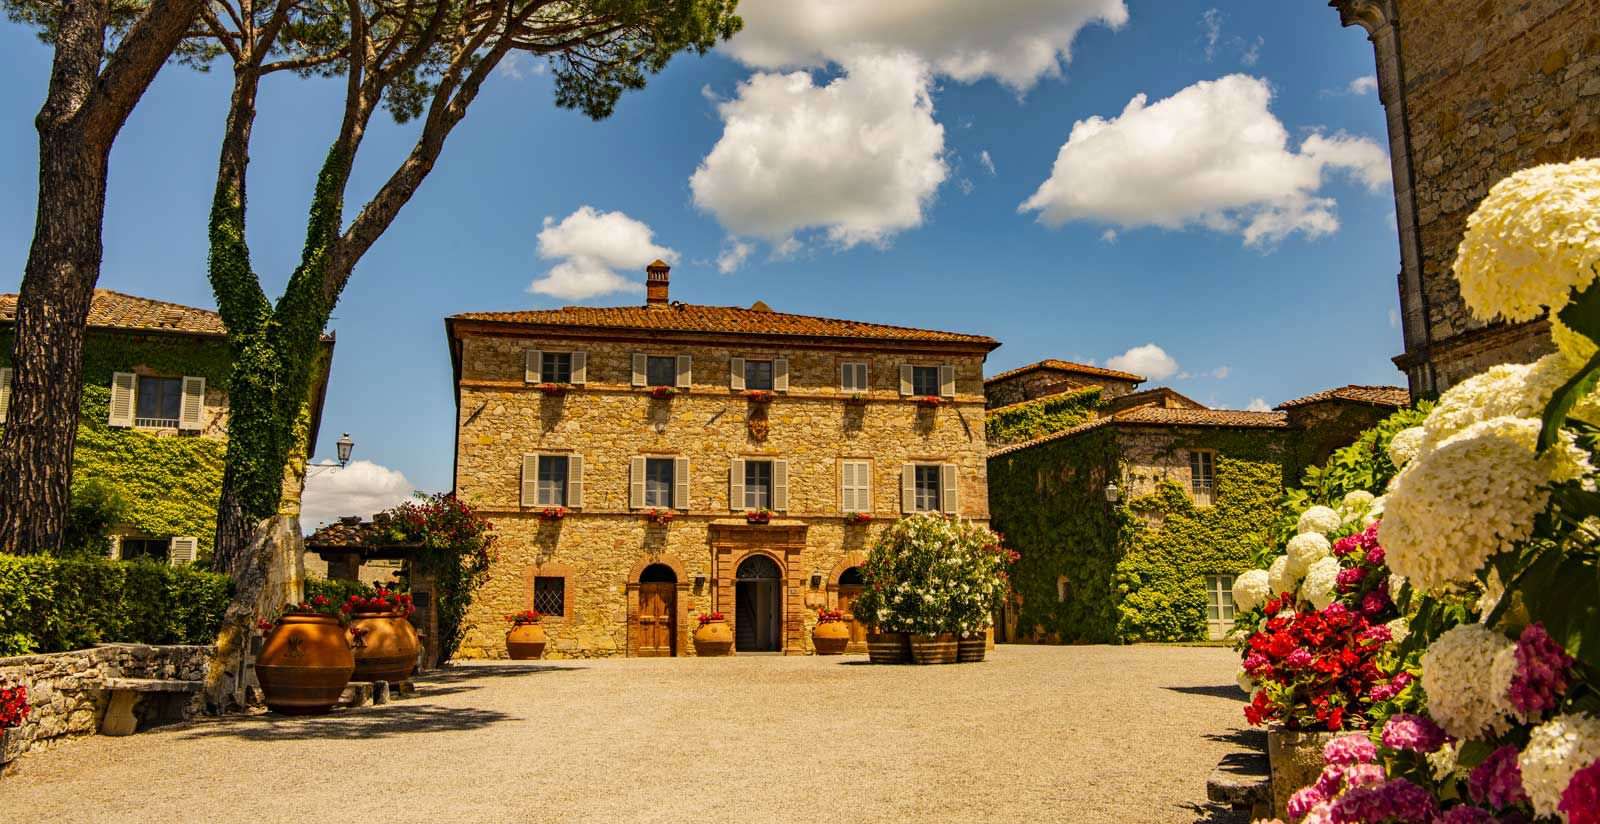 Borgo San Felice Chianti, Tuscany - Italy